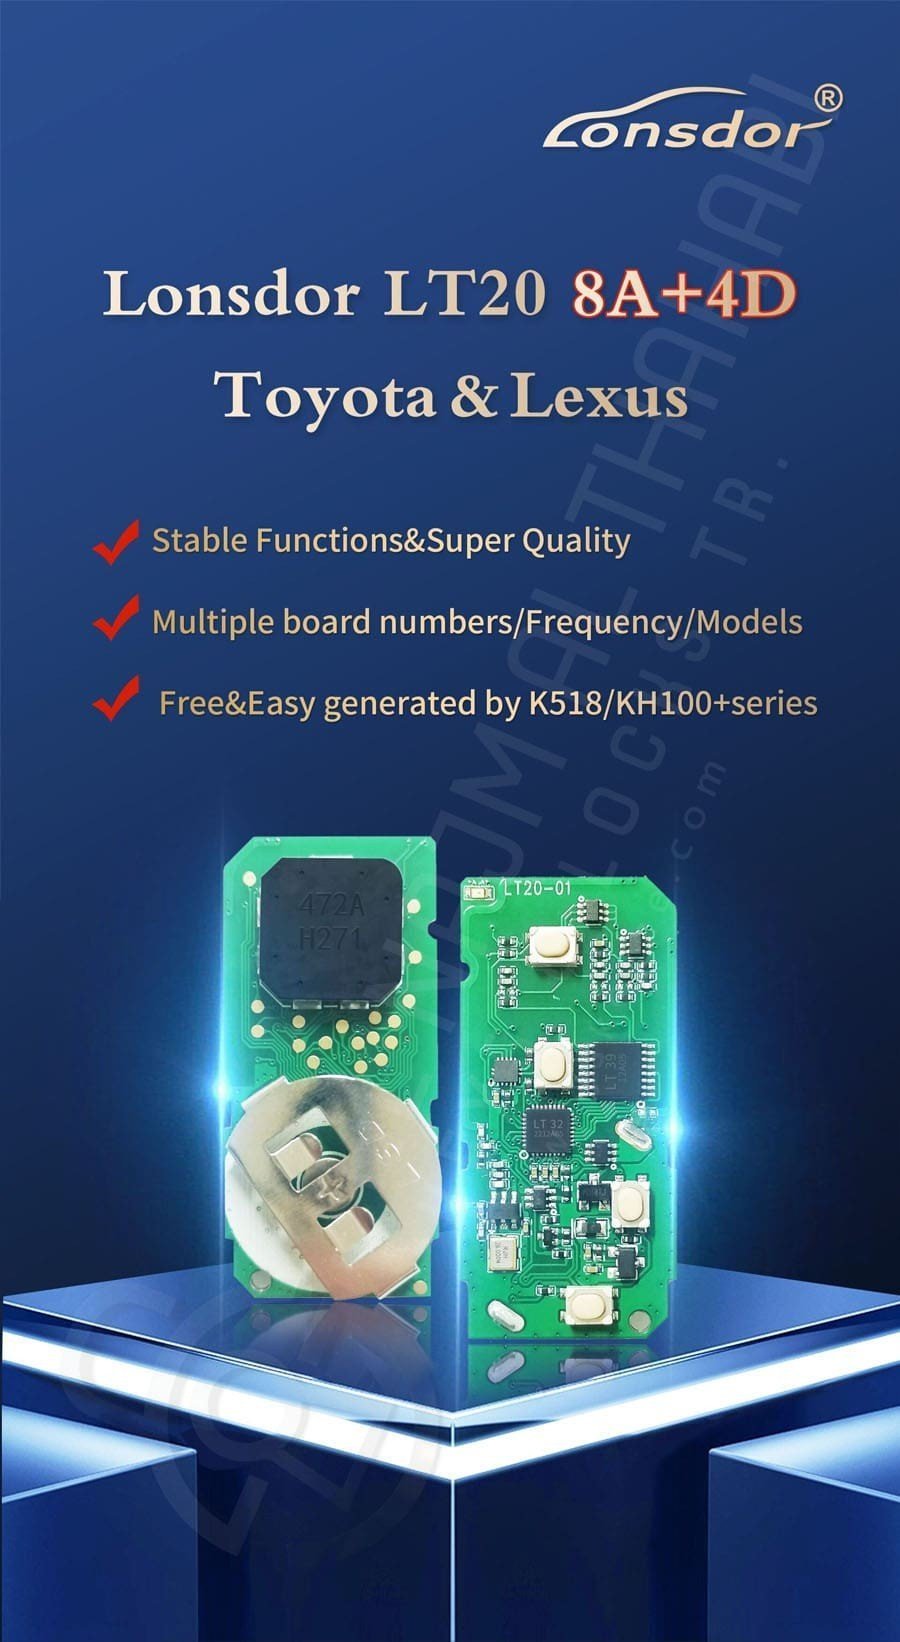 Lonsdor LT20-01 8A+4D Toyota & Lexus Smart Key PCB Features